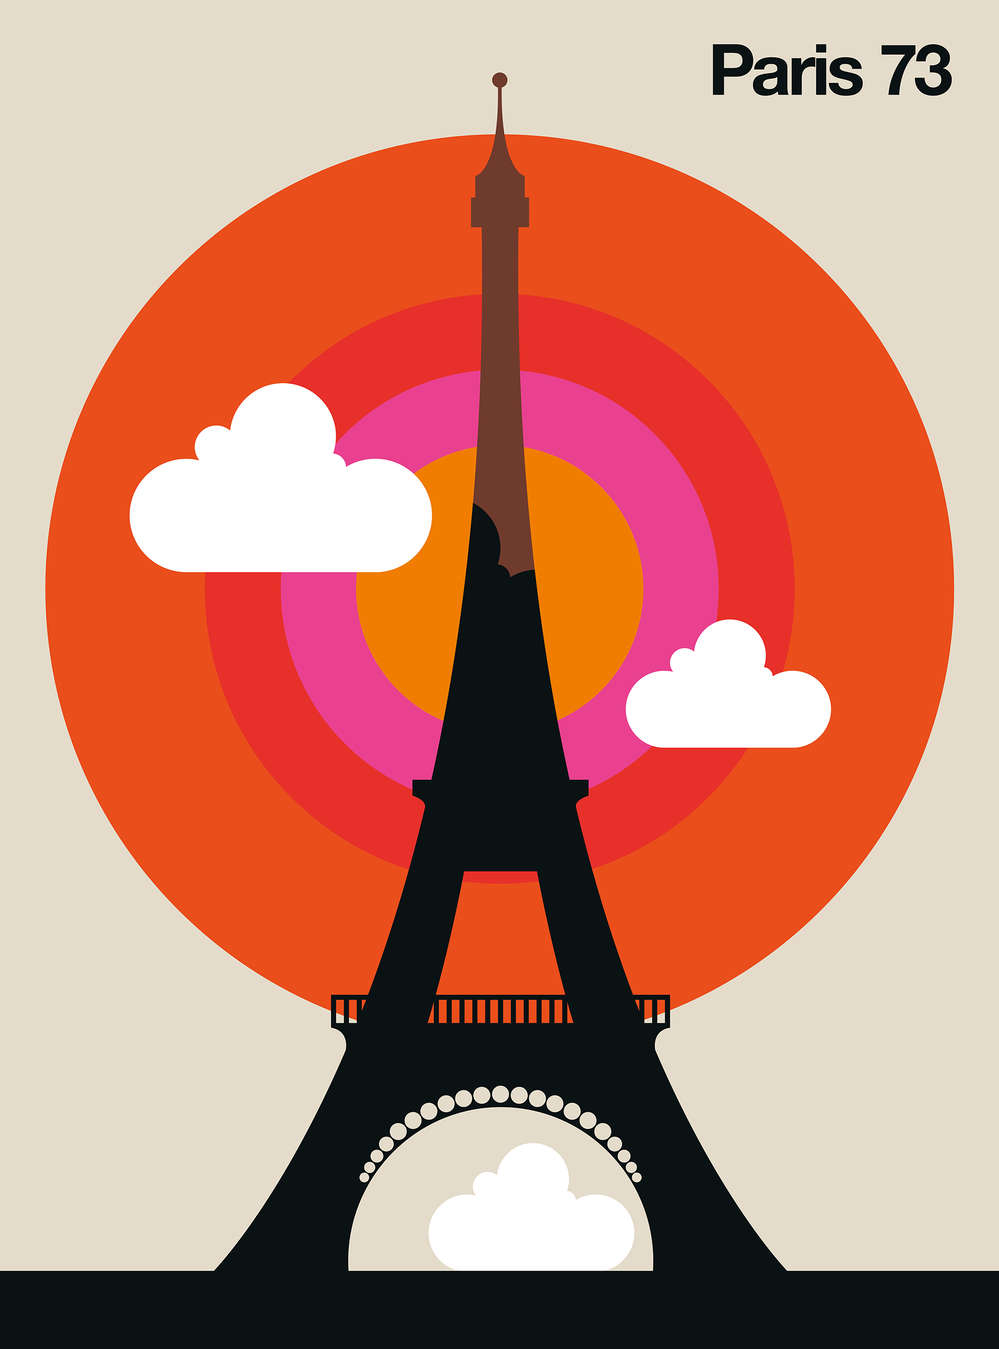             Fotomural París con motivo de la Torre Eiffel en estilo retro
        